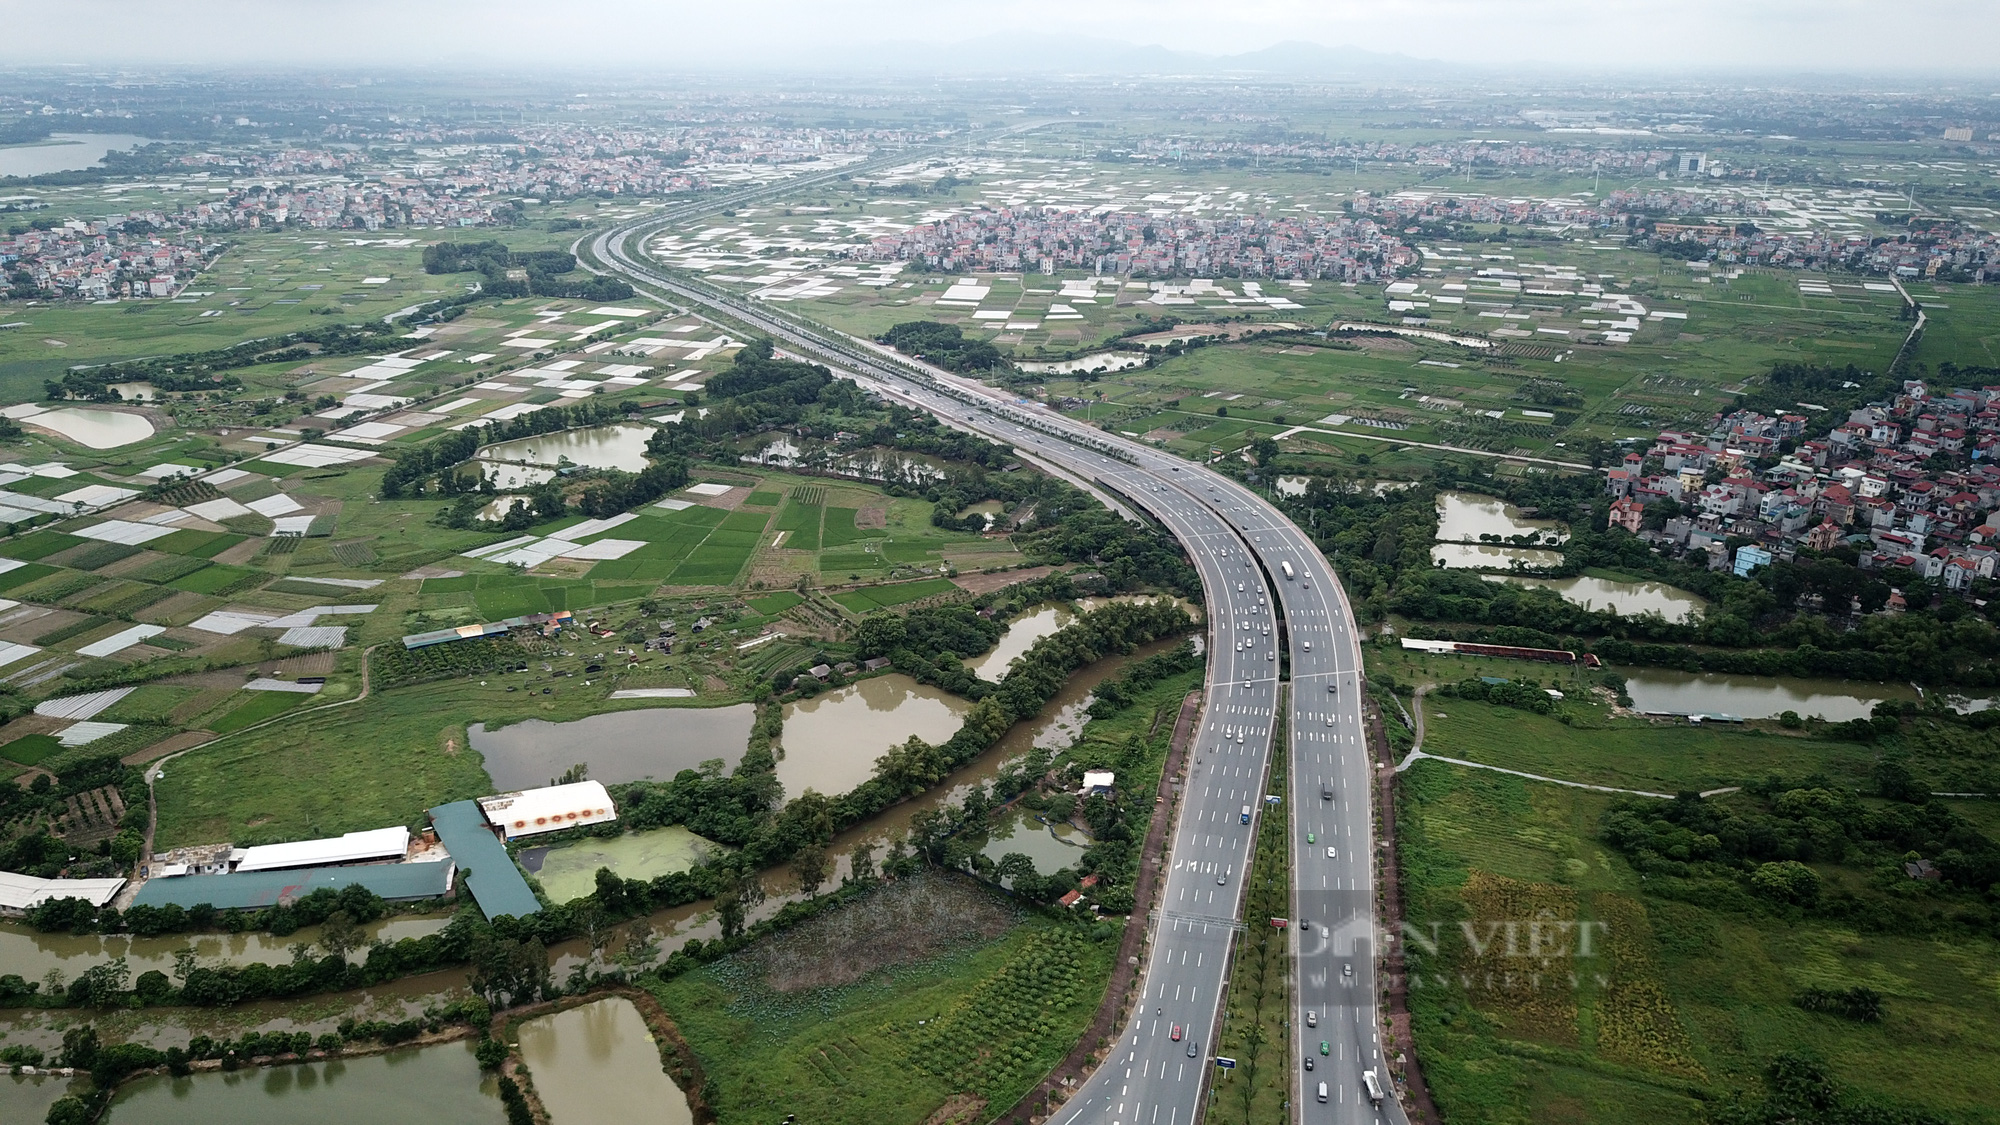 Quy hoạch 3 huyện Hà Nội lên thành phố: Một lộ trình dài, cần tính toán kỹ lưỡng - Ảnh 6.